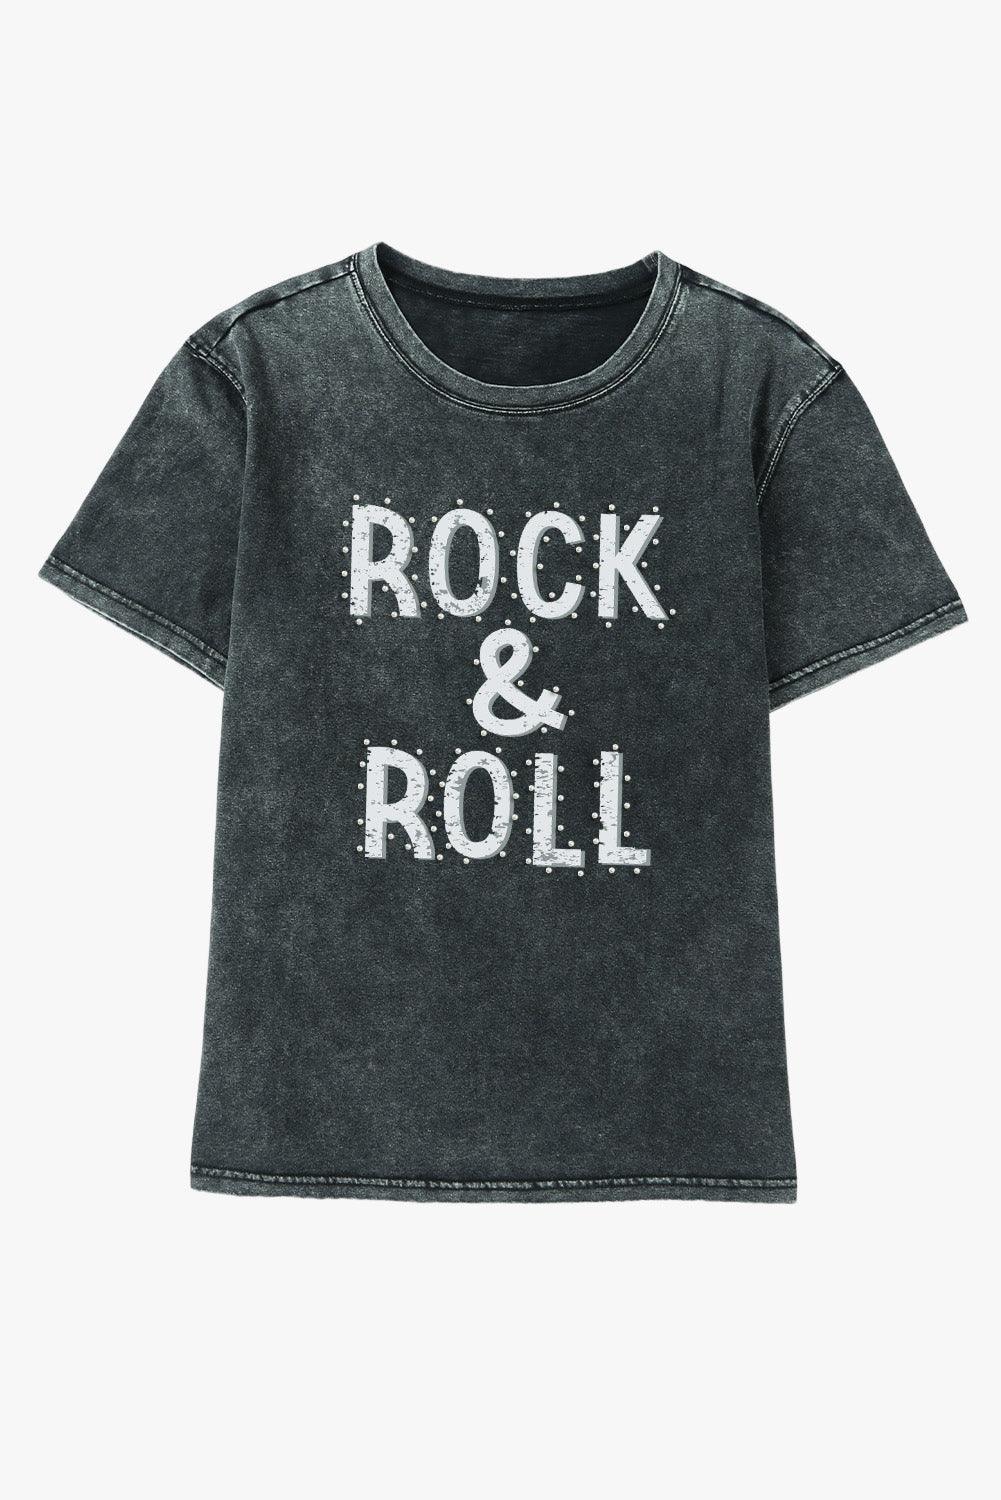 Black ROCK & ROLL Mineral Wash Crewneck T Shirt - L & M Kee, LLC